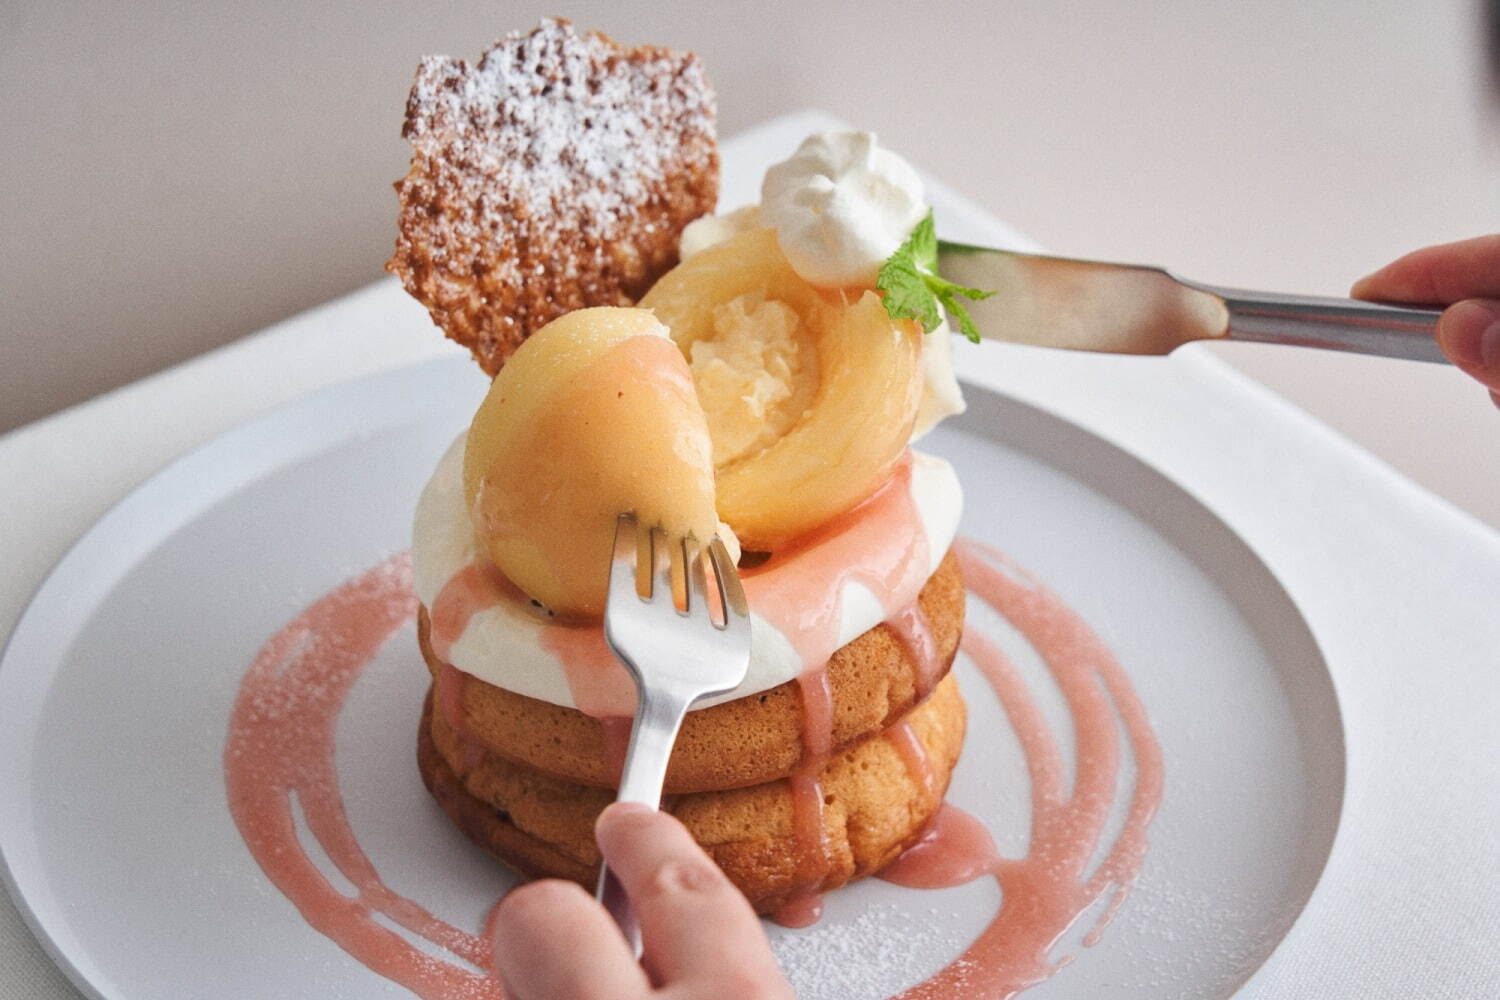 「まるごと“岡山白桃”とミルキークリームのパンケーキ」1,870円
※1日10食限定。